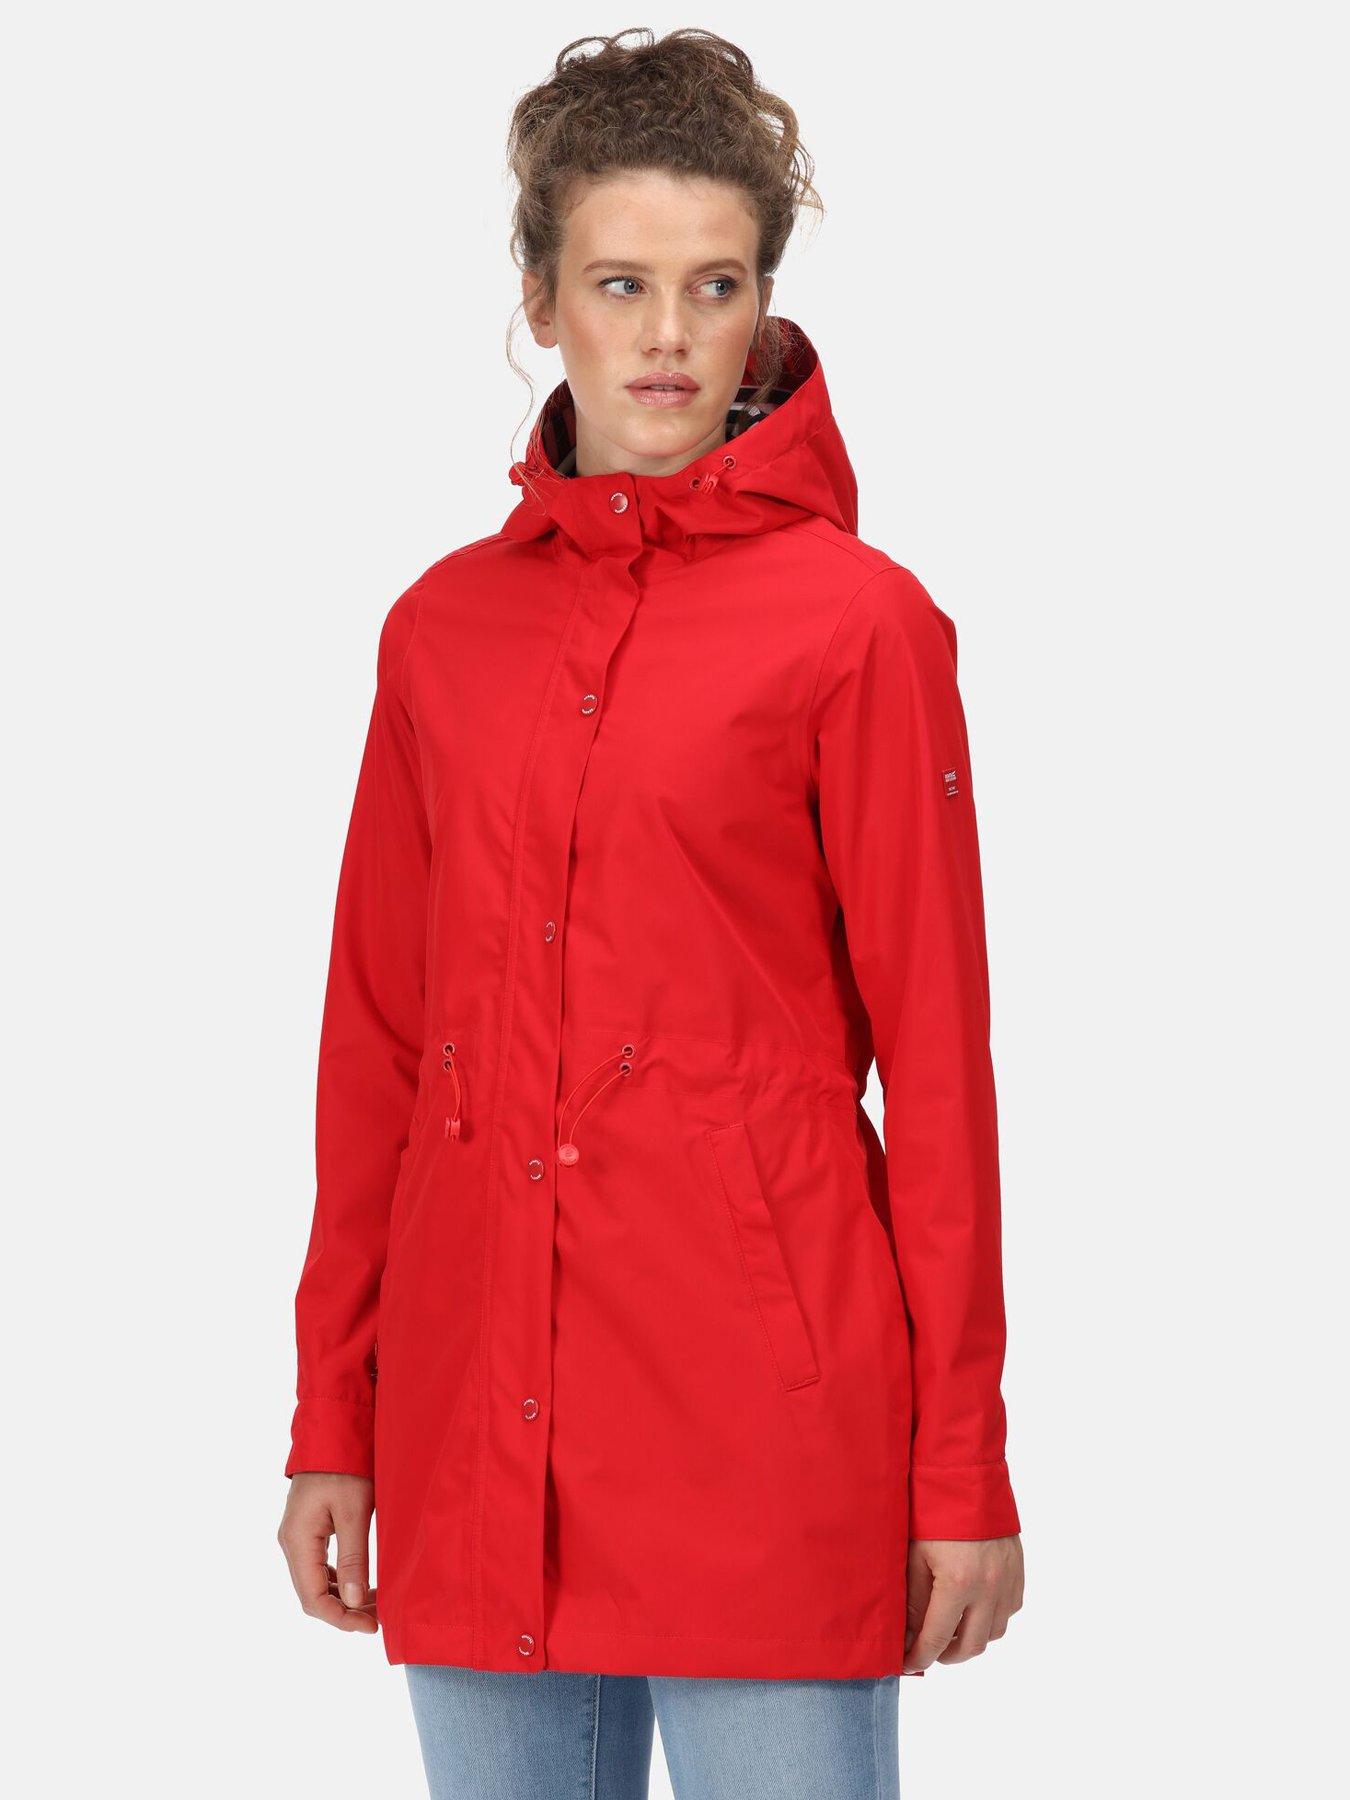  Blakesleigh Waterproof Shell Jacket - Red